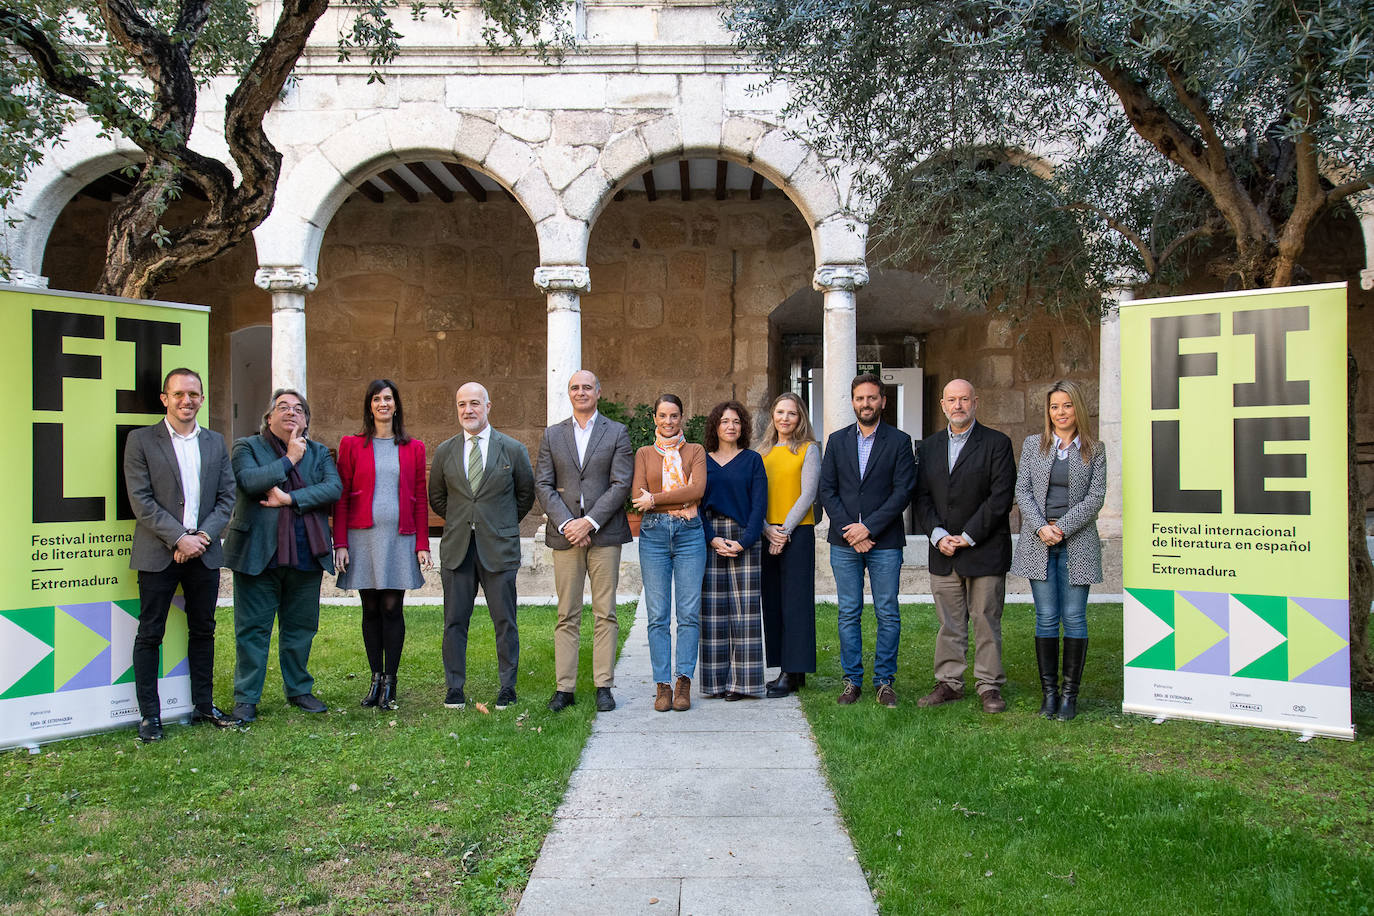 La ciudad trujillana reunirá a literatos y periodistas en el Festival de Literatura de Extremadura 